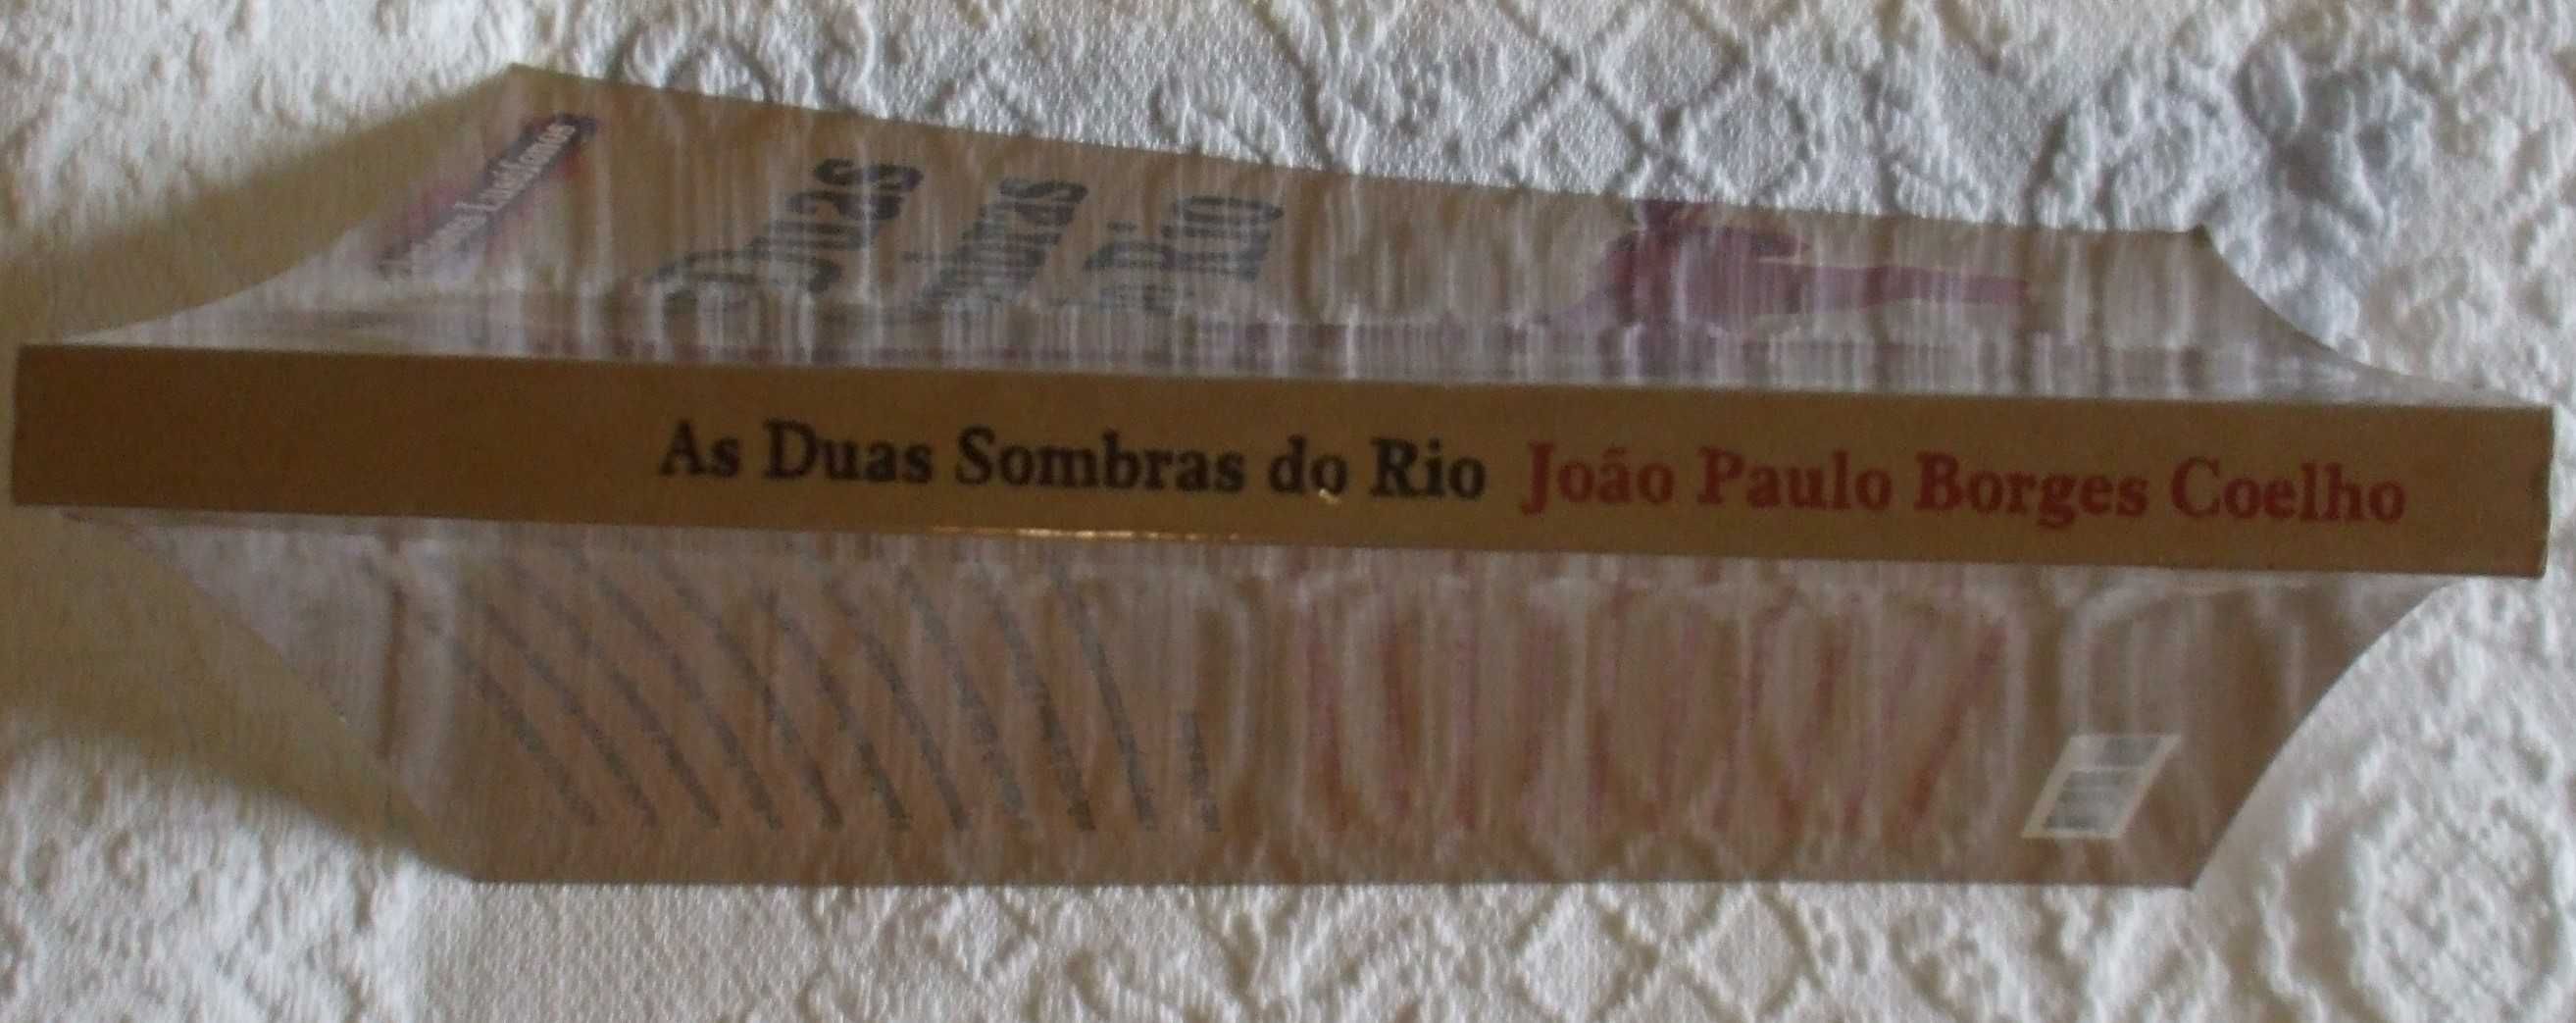 As duas sombras do rio, João Paulo Borges Coelho